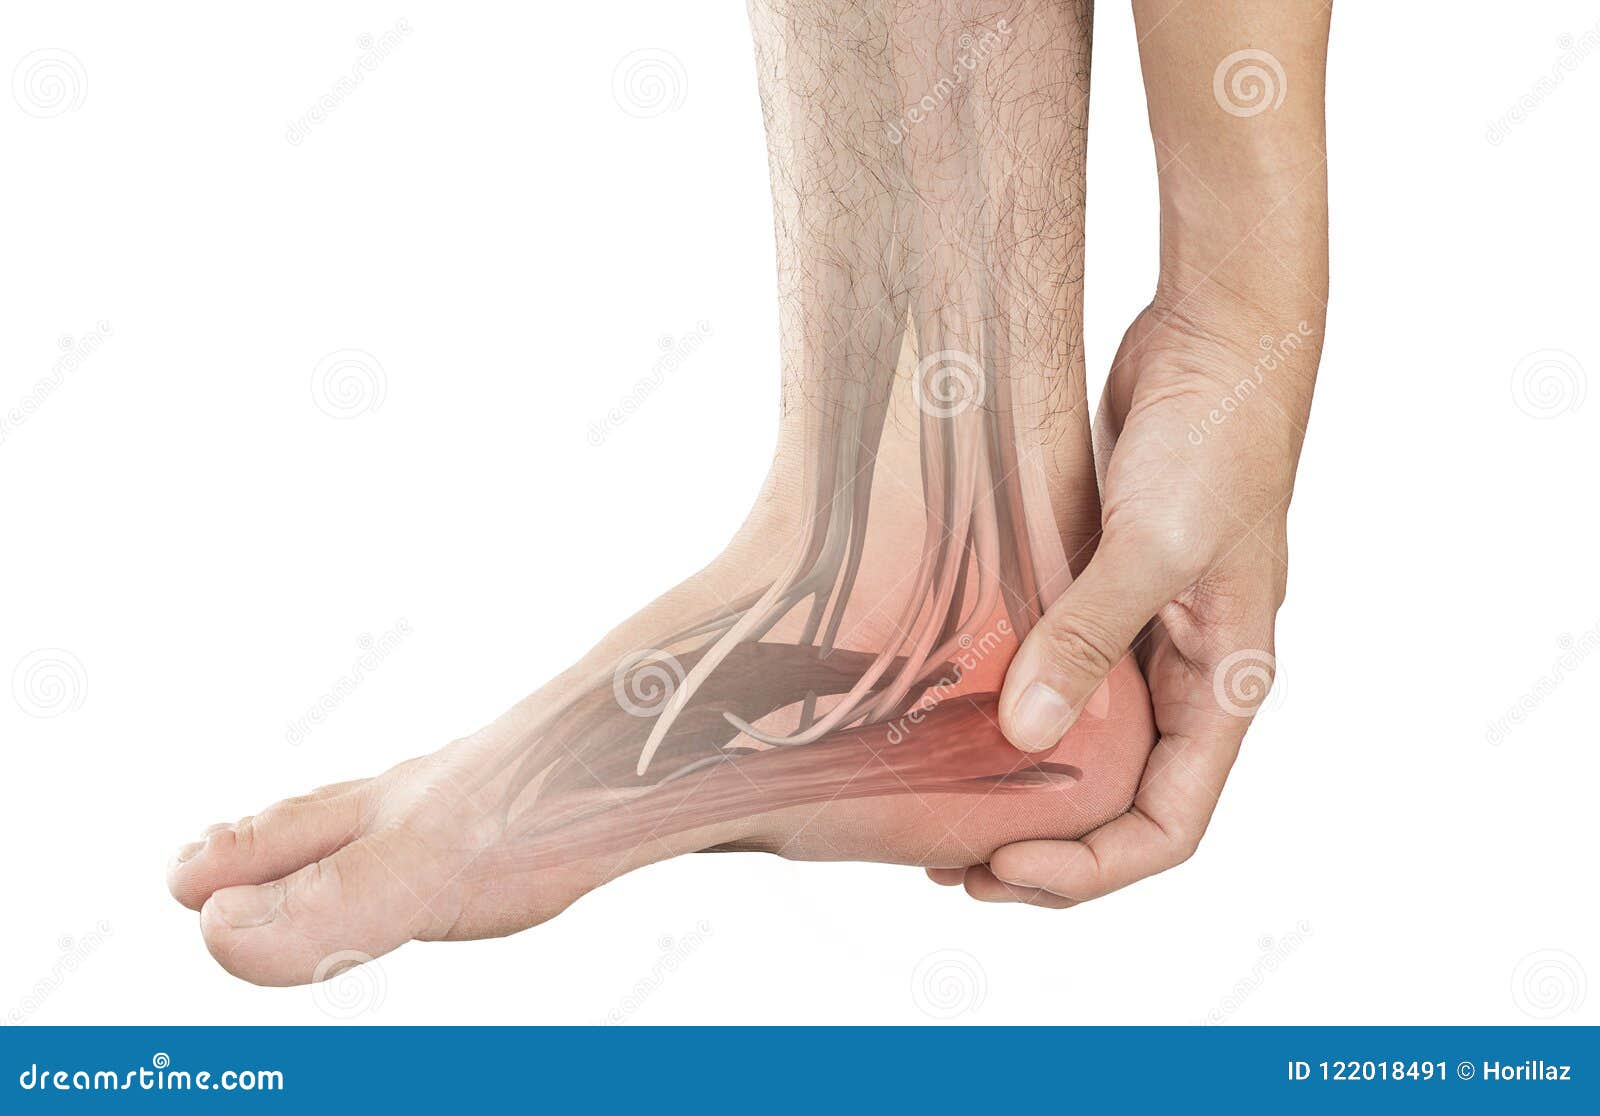 Dorsal Digital Nerves Of Foot Stock Vector Illustration Of, 40% OFF